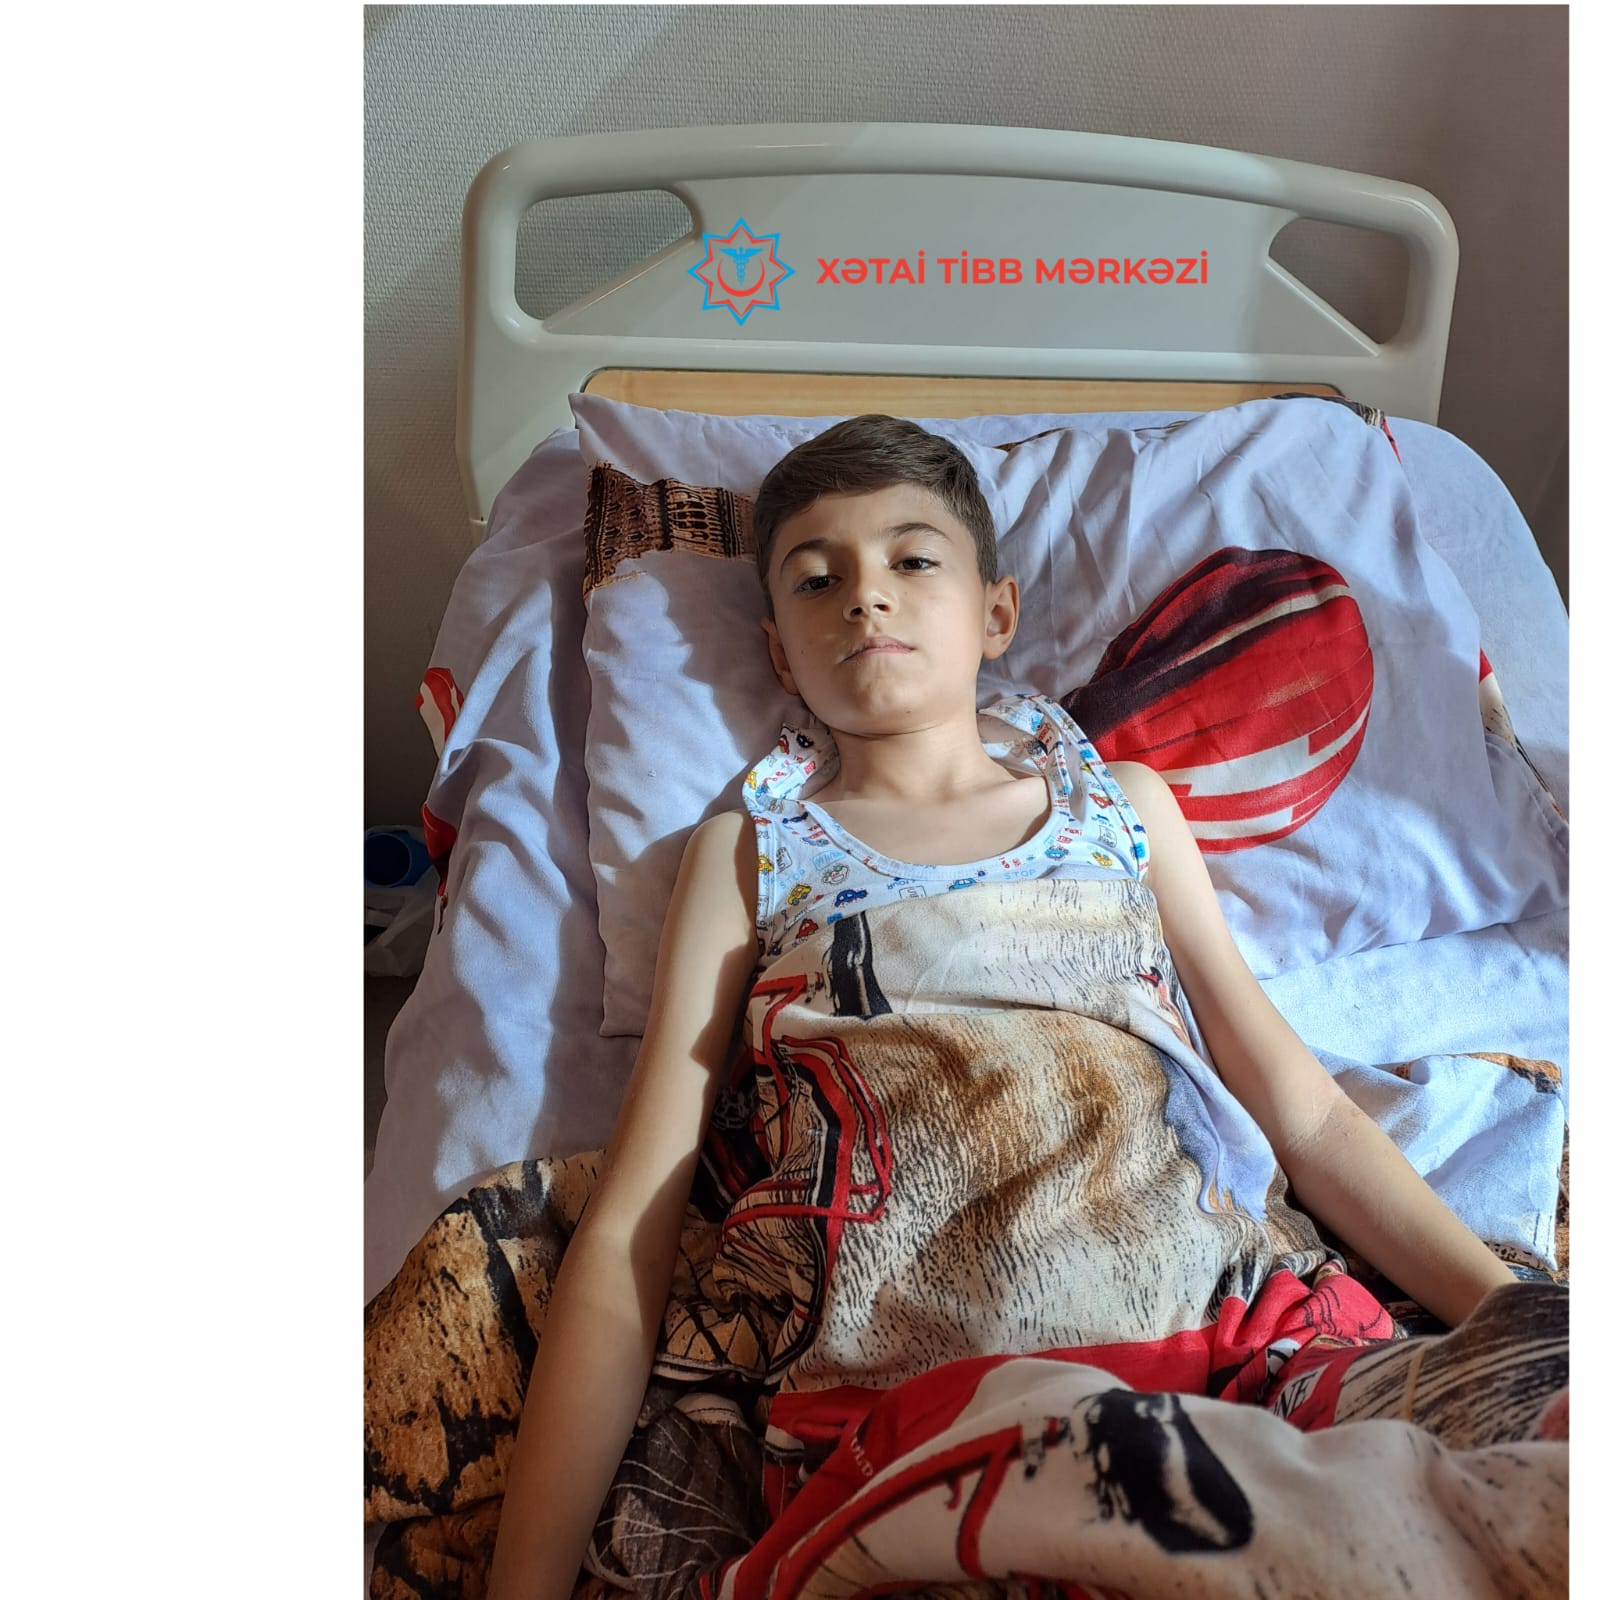 Mədəsində yad cisim olan 14 yaşlı oğlan Xətai Tibb Mərkəzində uğurla əməliyyat edilib